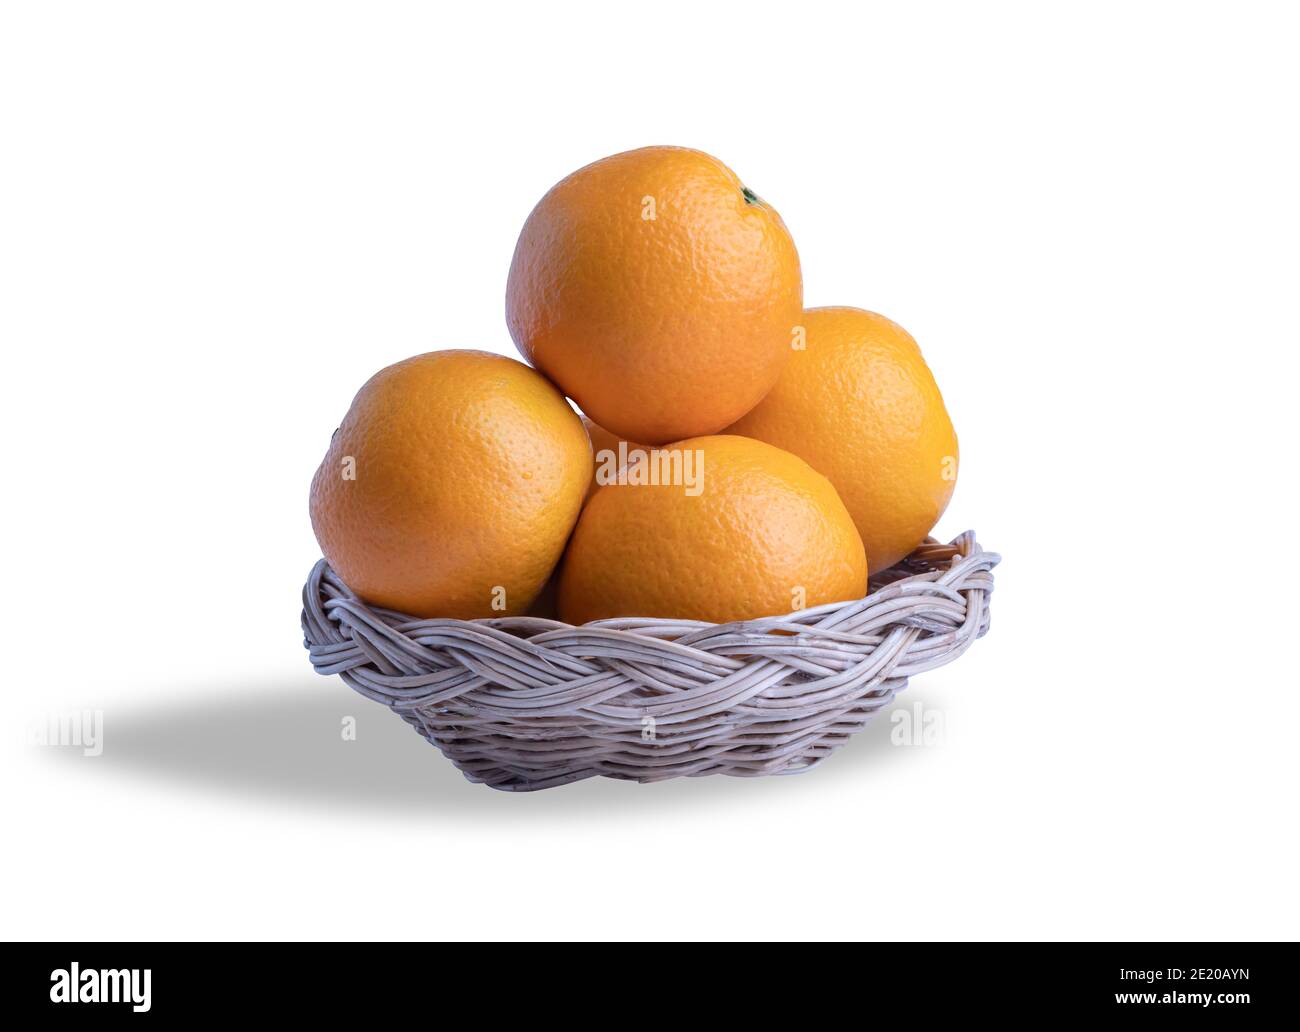 Le arance si raggruppano nel cesto di legno sullo sfondo bianco con tracciati di ritaglio. Molti tipi di arance possono essere mangiati. La frutta è agrodolce o dolce. Spesso Foto Stock